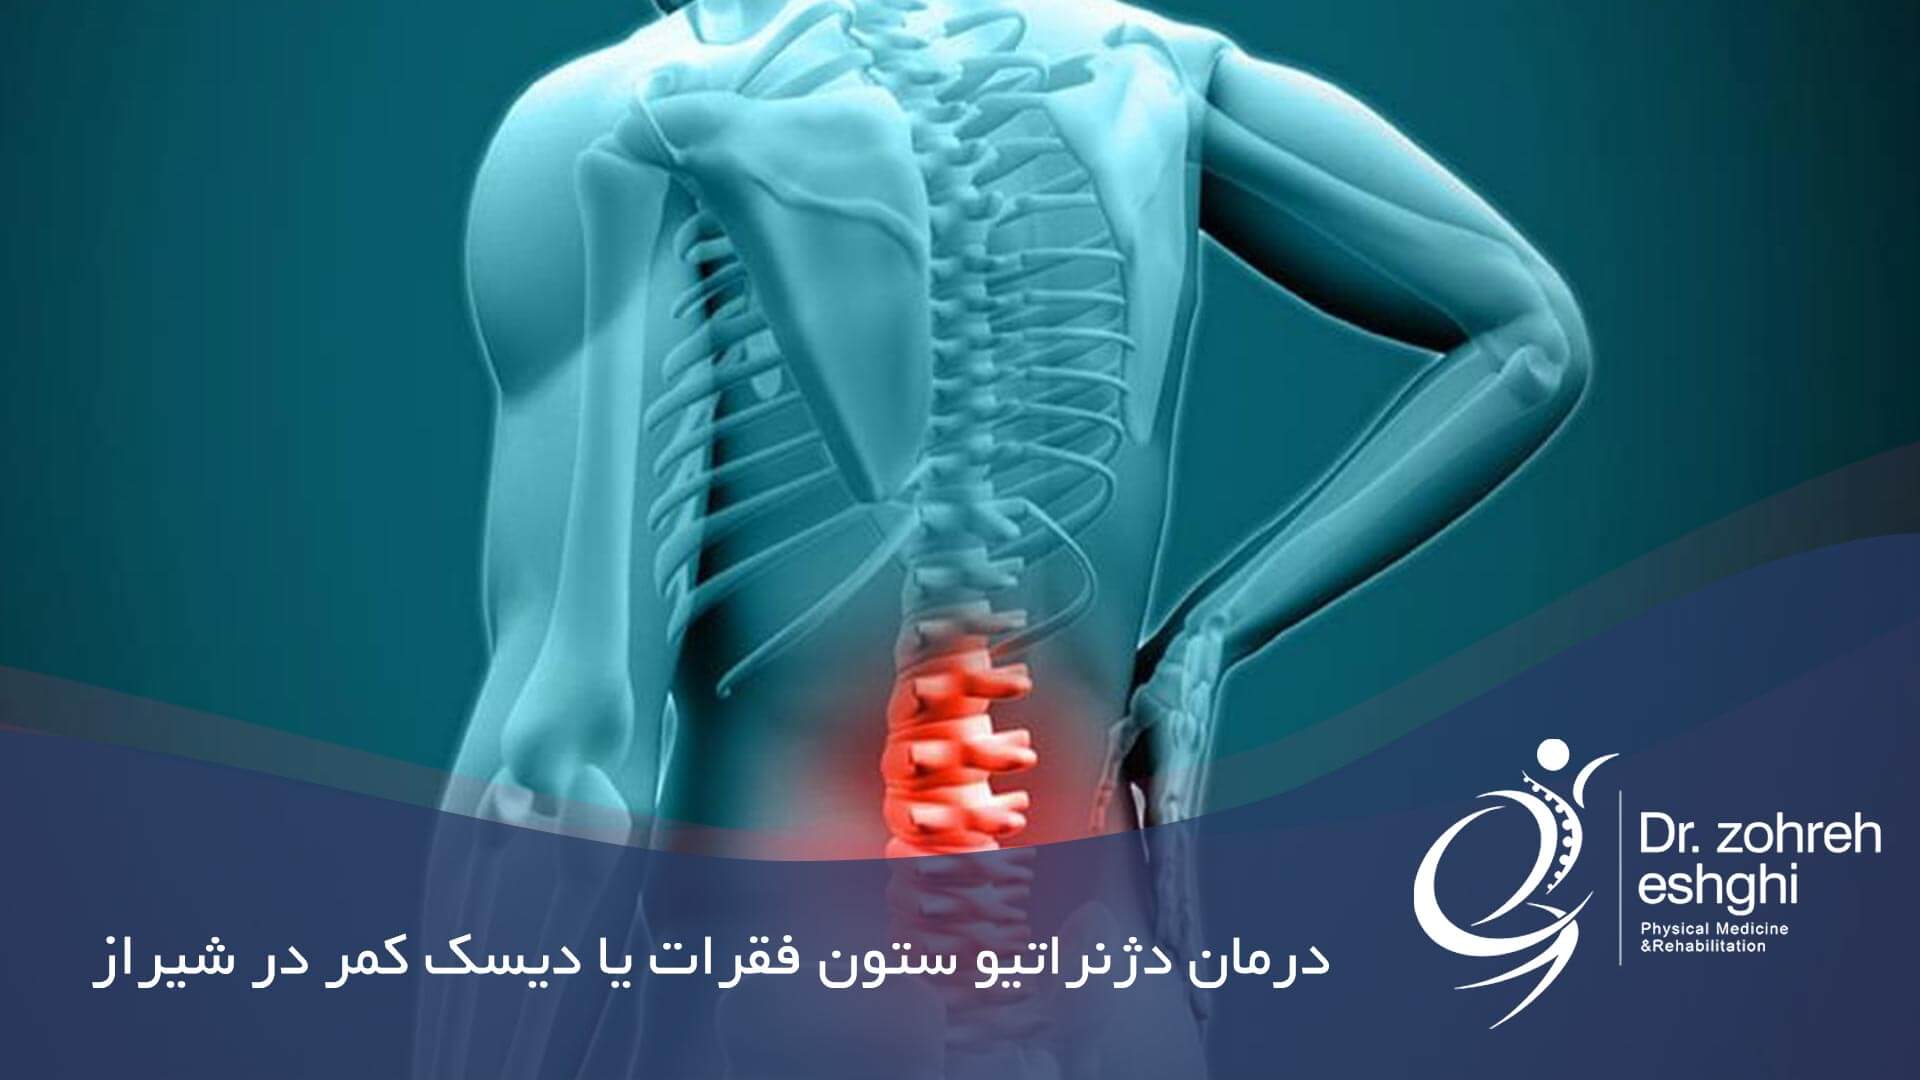 درمان دژنراتیو ستون فقرات در شیراز